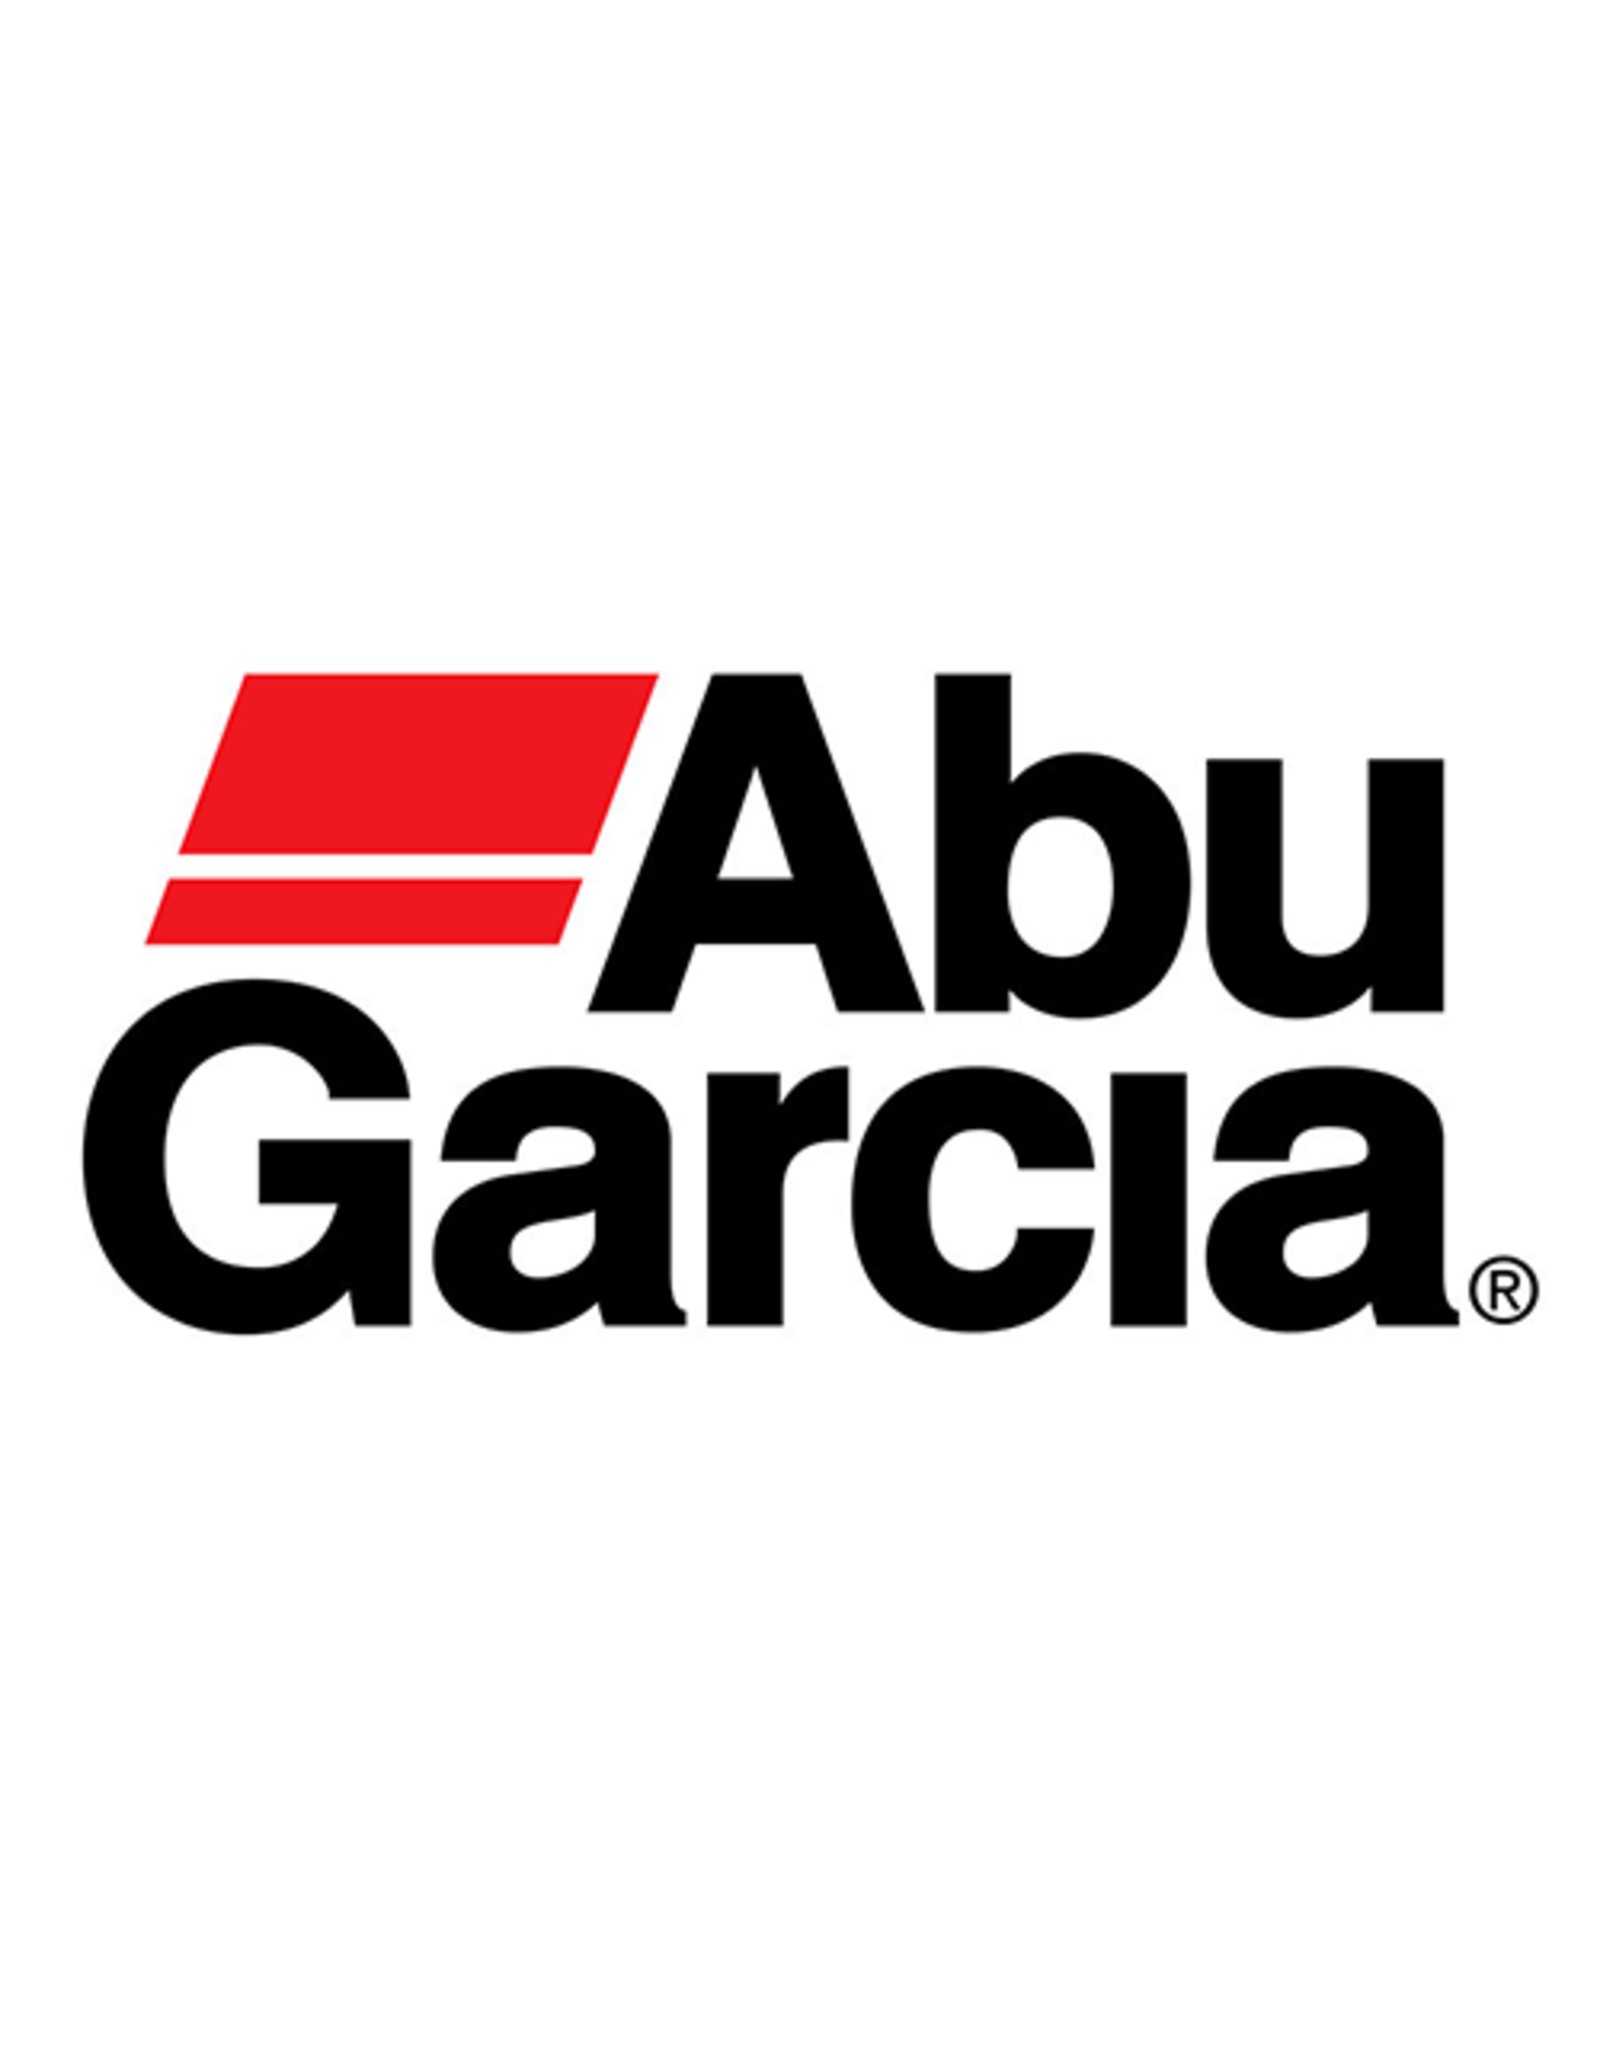 Abu Garcia 1378817  DUST CAP